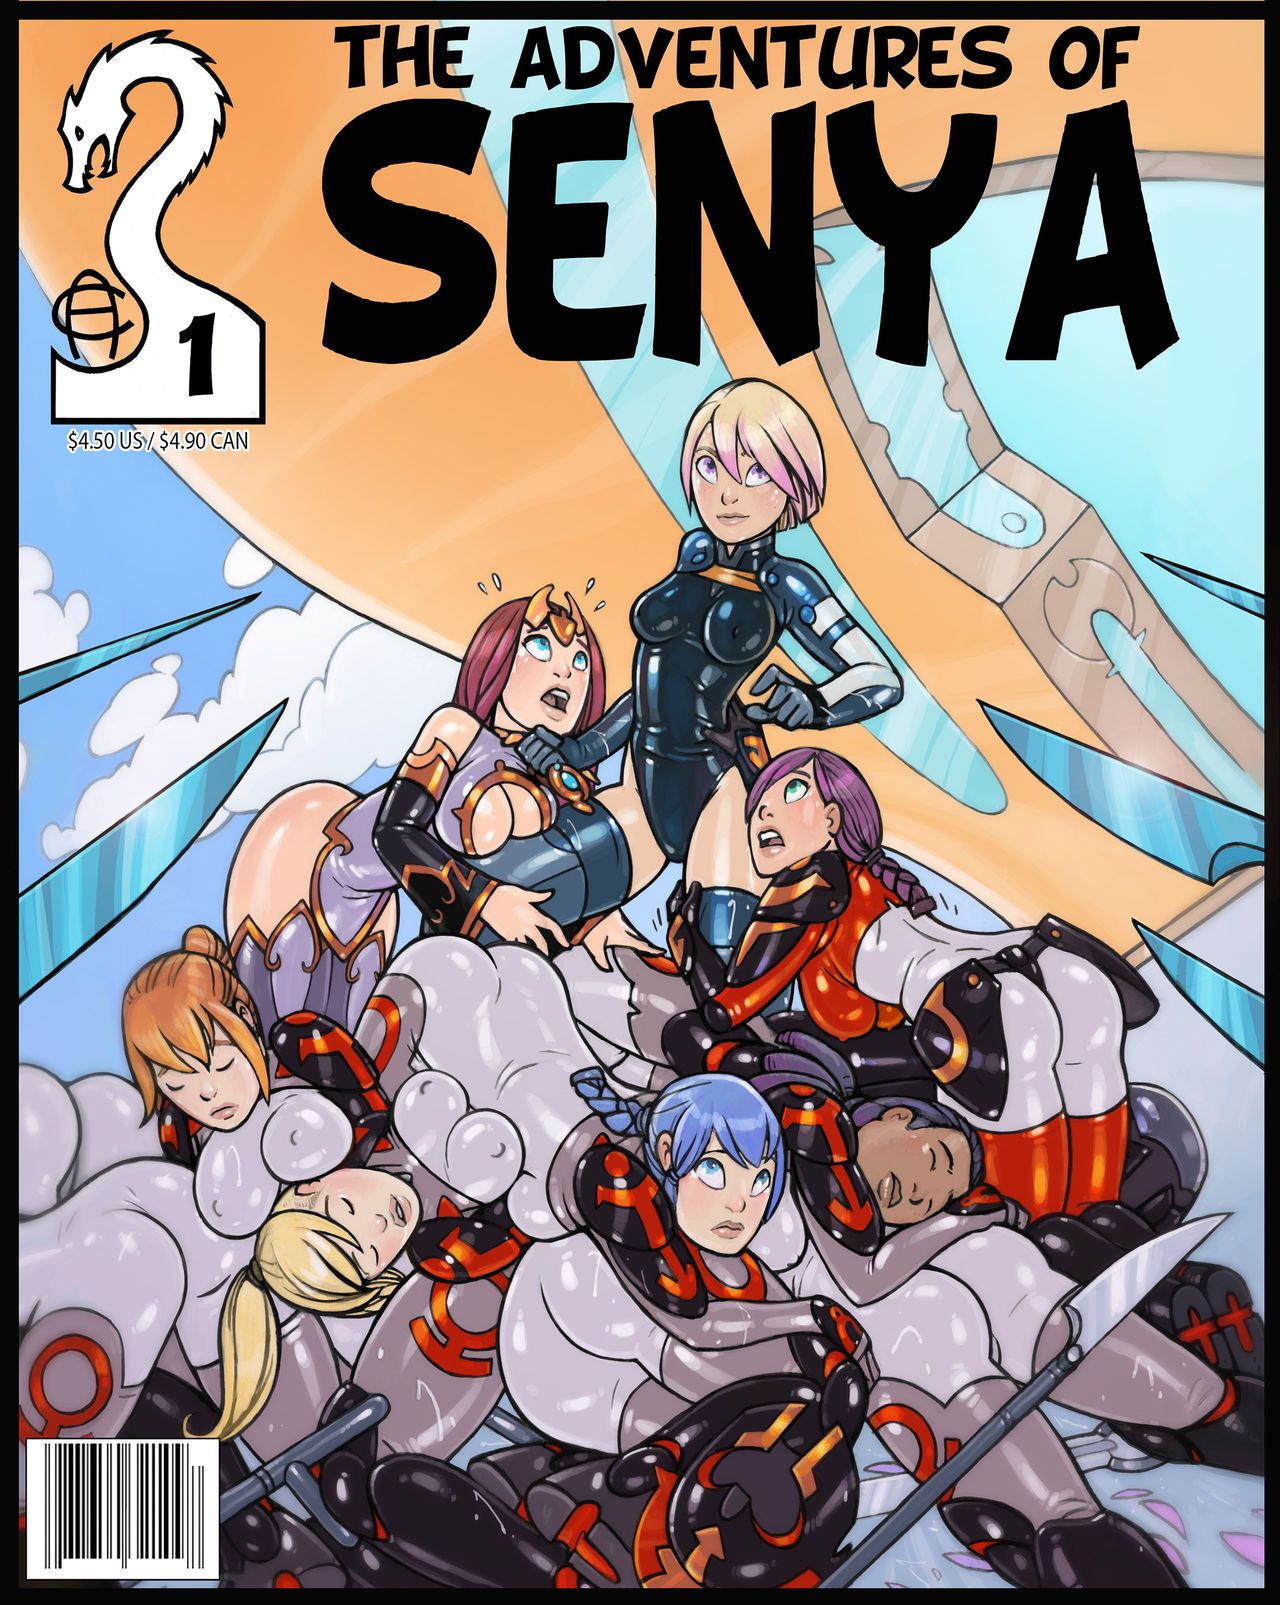 [Alexichabanae] Adventures of Senya (ongoing) 1